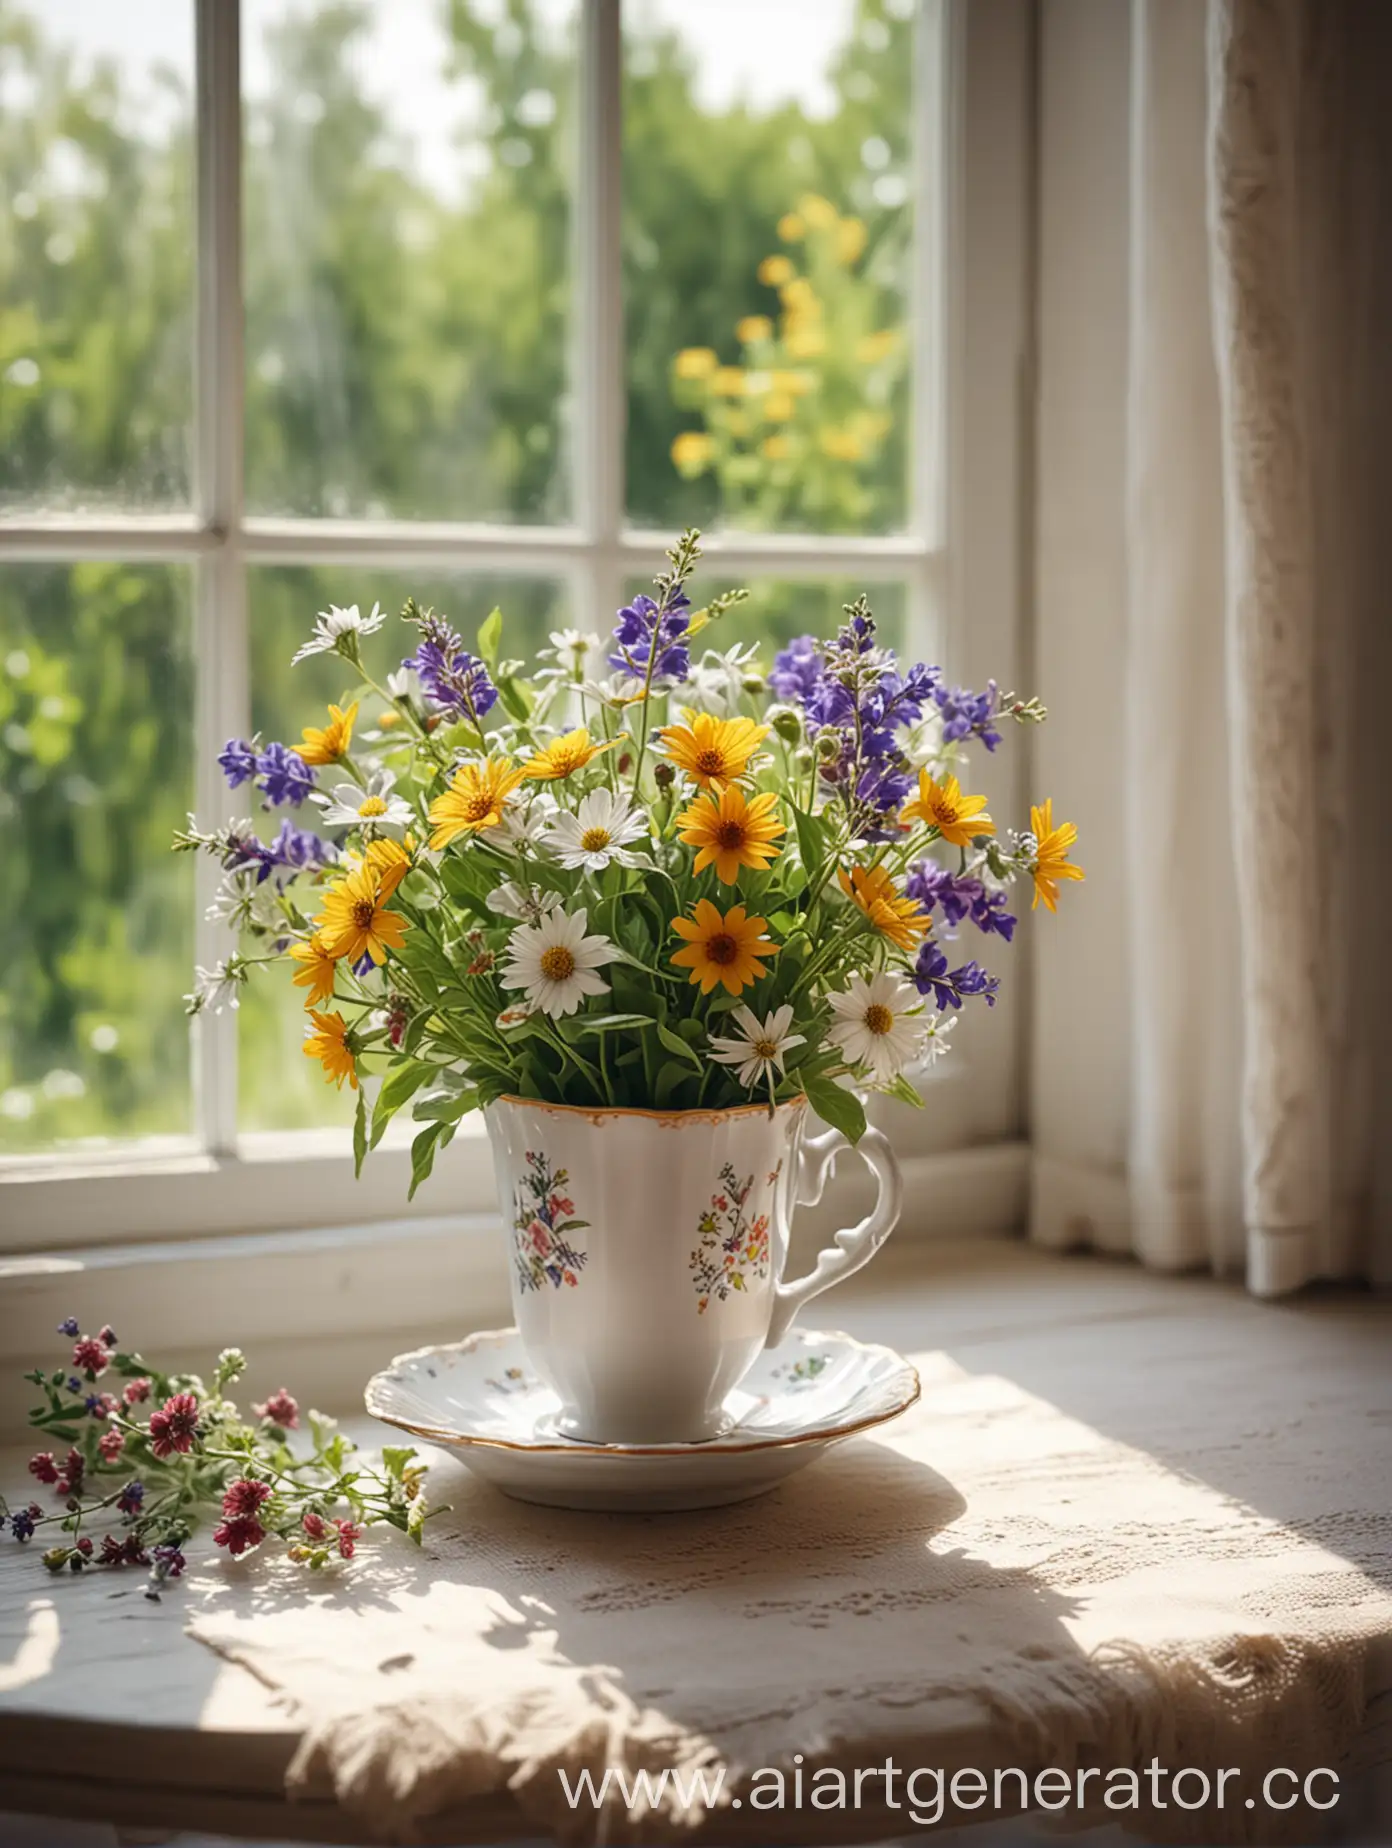 Чашечка кофе на столе рядом букет полевых цветов за окном солнцу обстановка в доме уютная реалистичность, четкость картинка